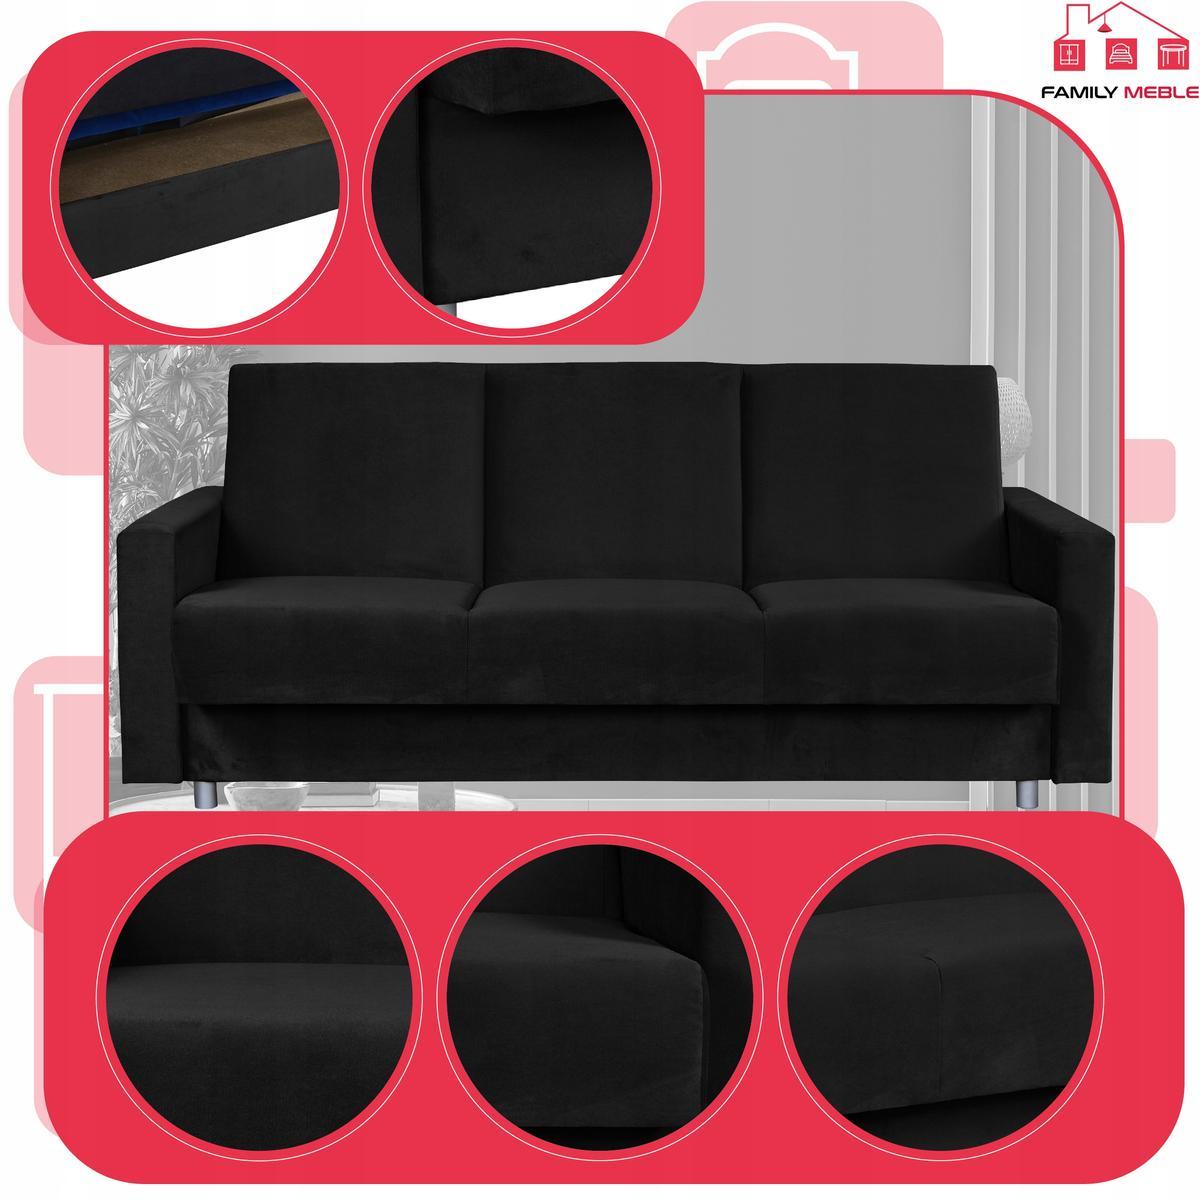 Wersalka sofa kanapa rozkładana czarna Alicja FamilyMeble 3 Full Screen